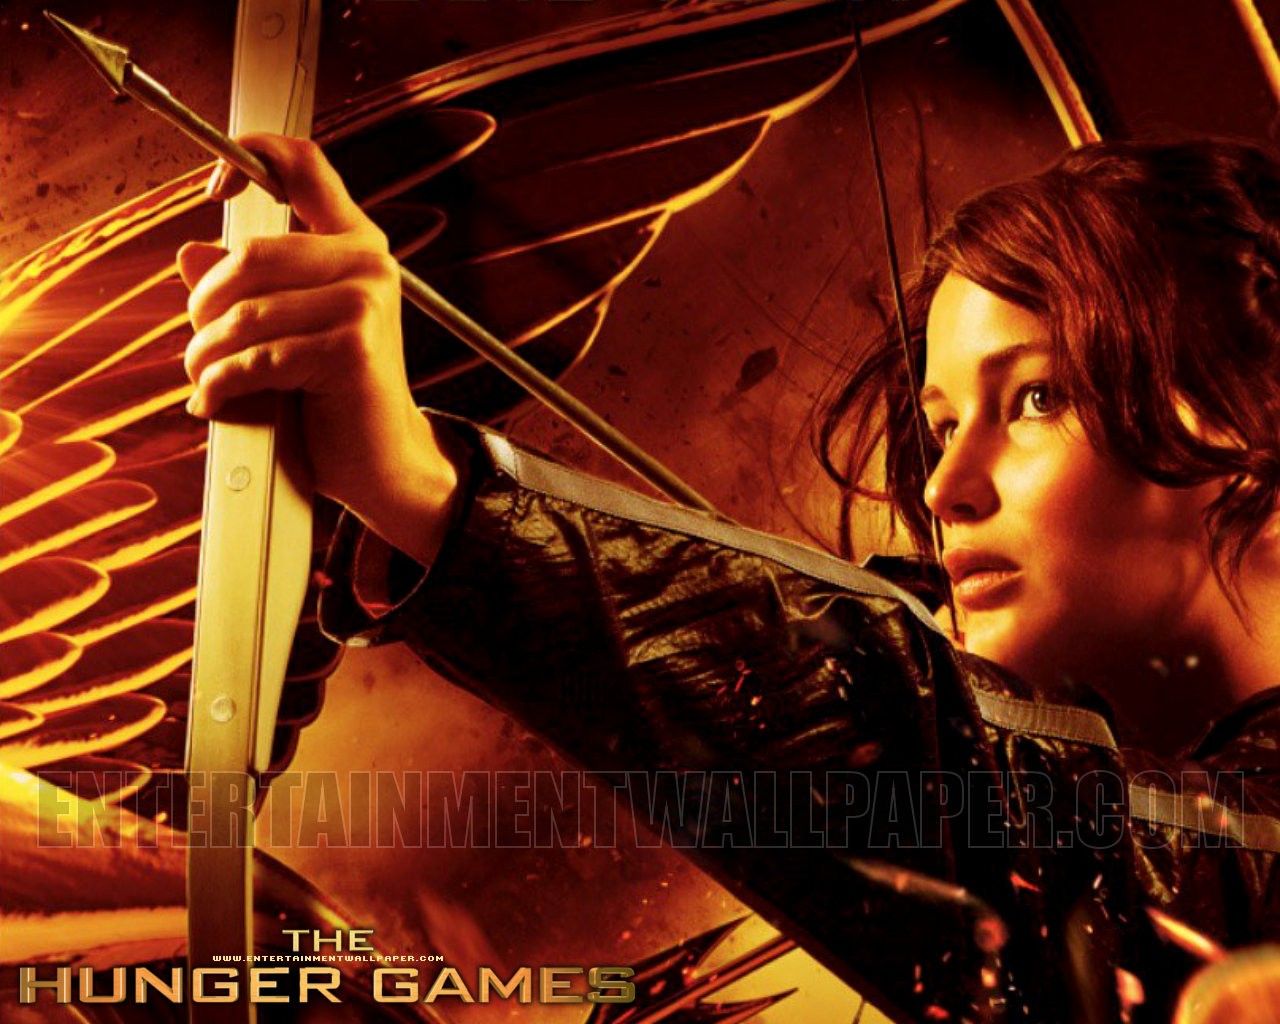 The Hunger Games Wallpaper - #10031080 (1280x1024) | Desktop ...